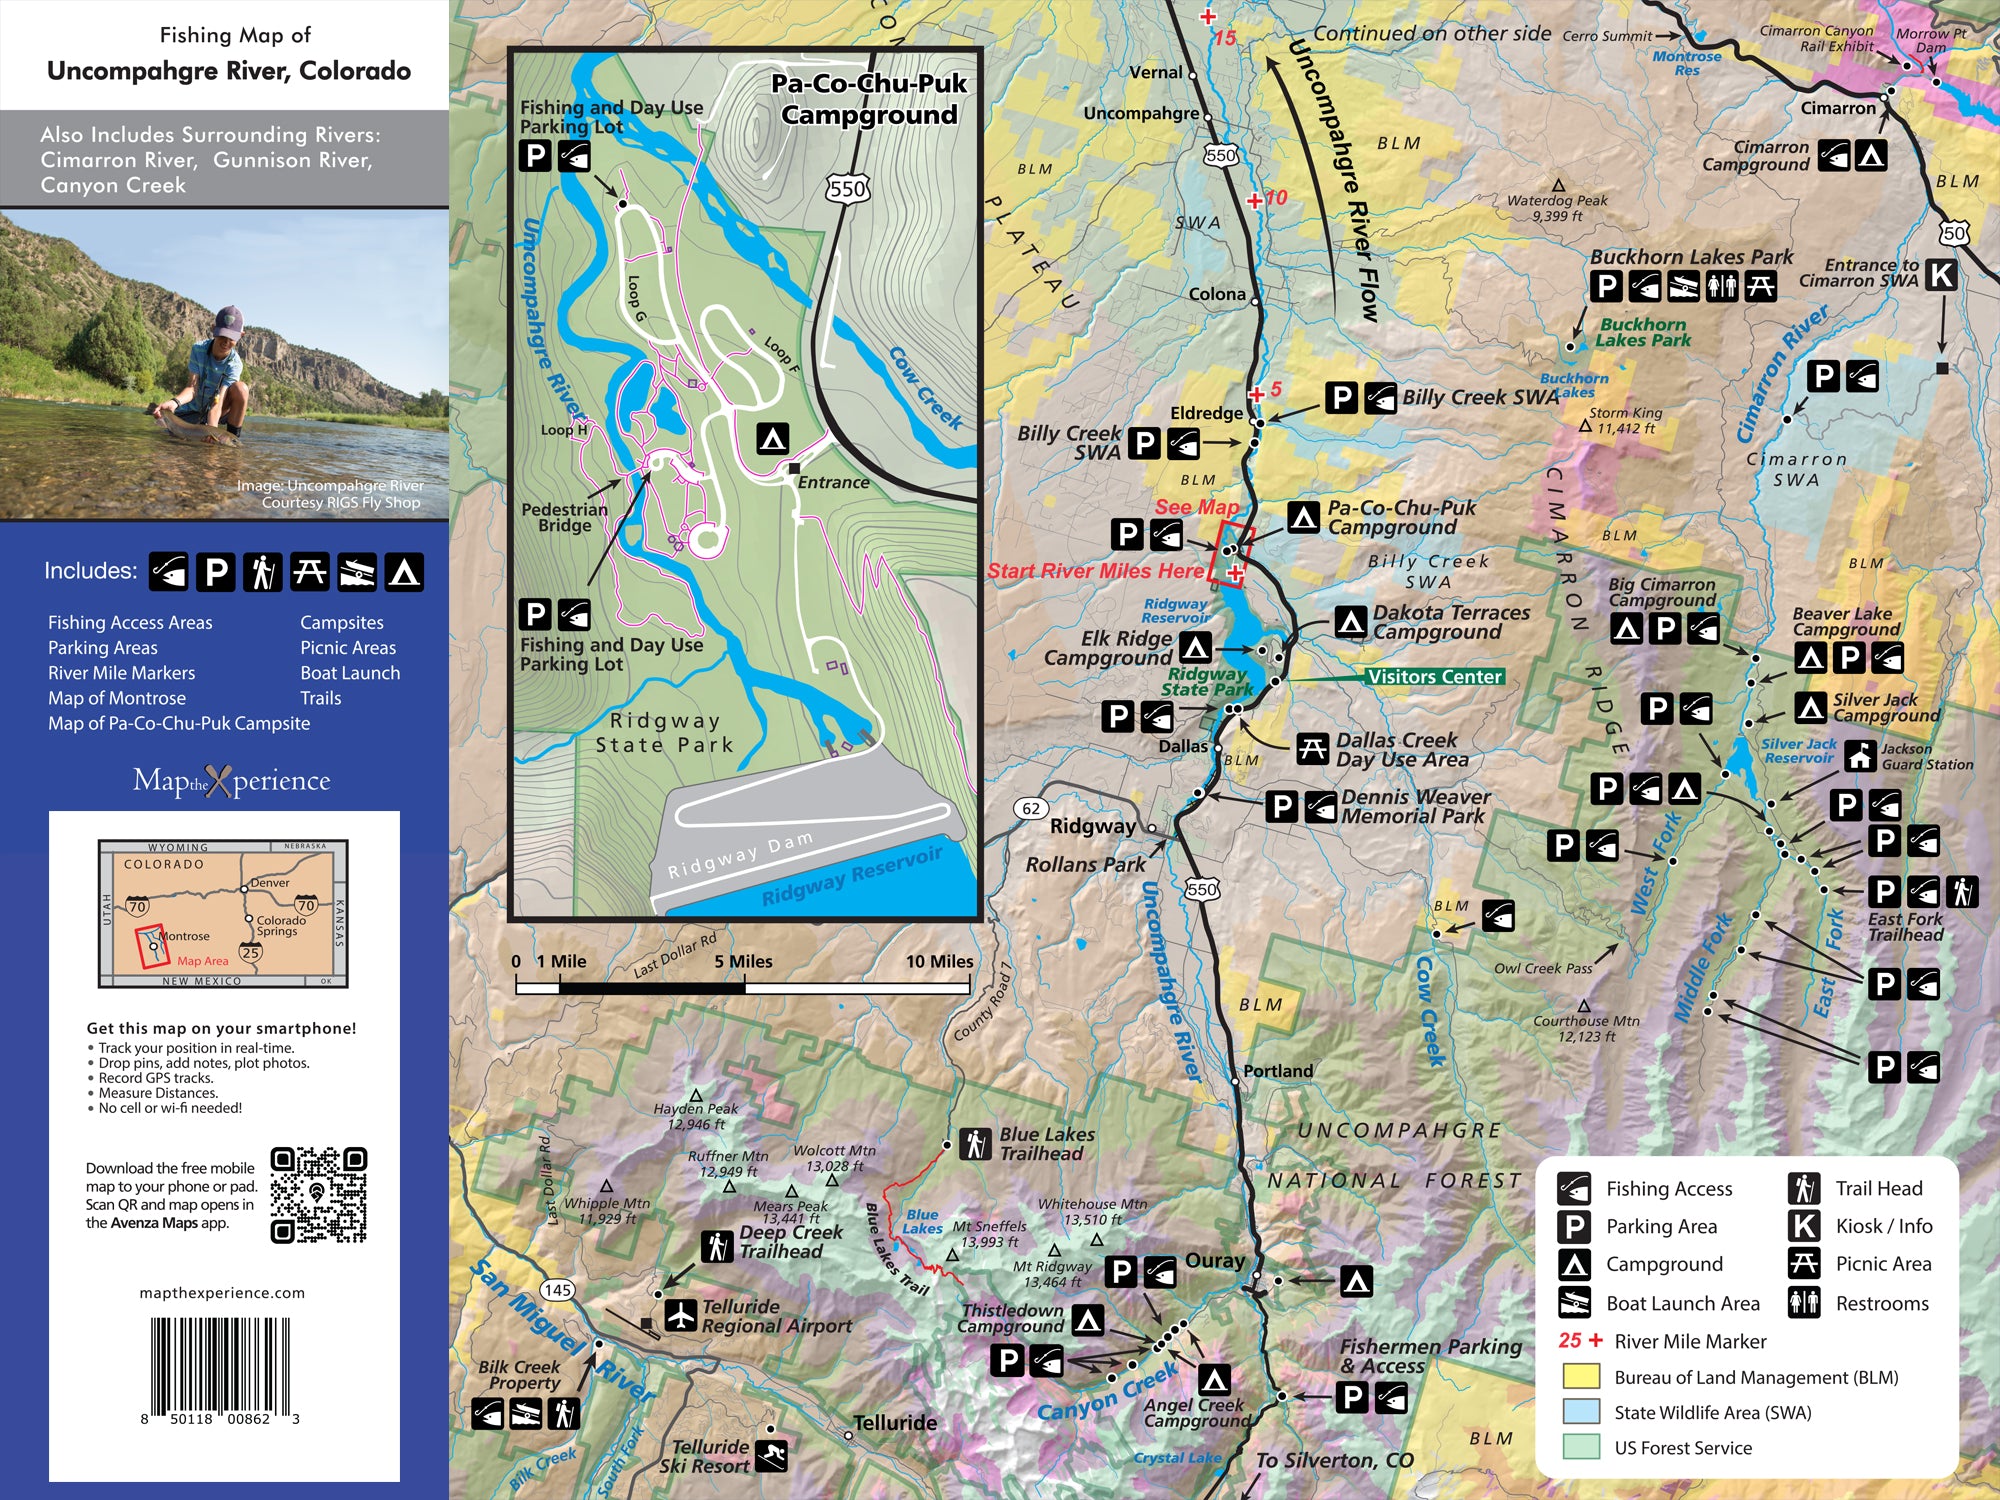 Uncompahgre River, Colorado Fishing Map